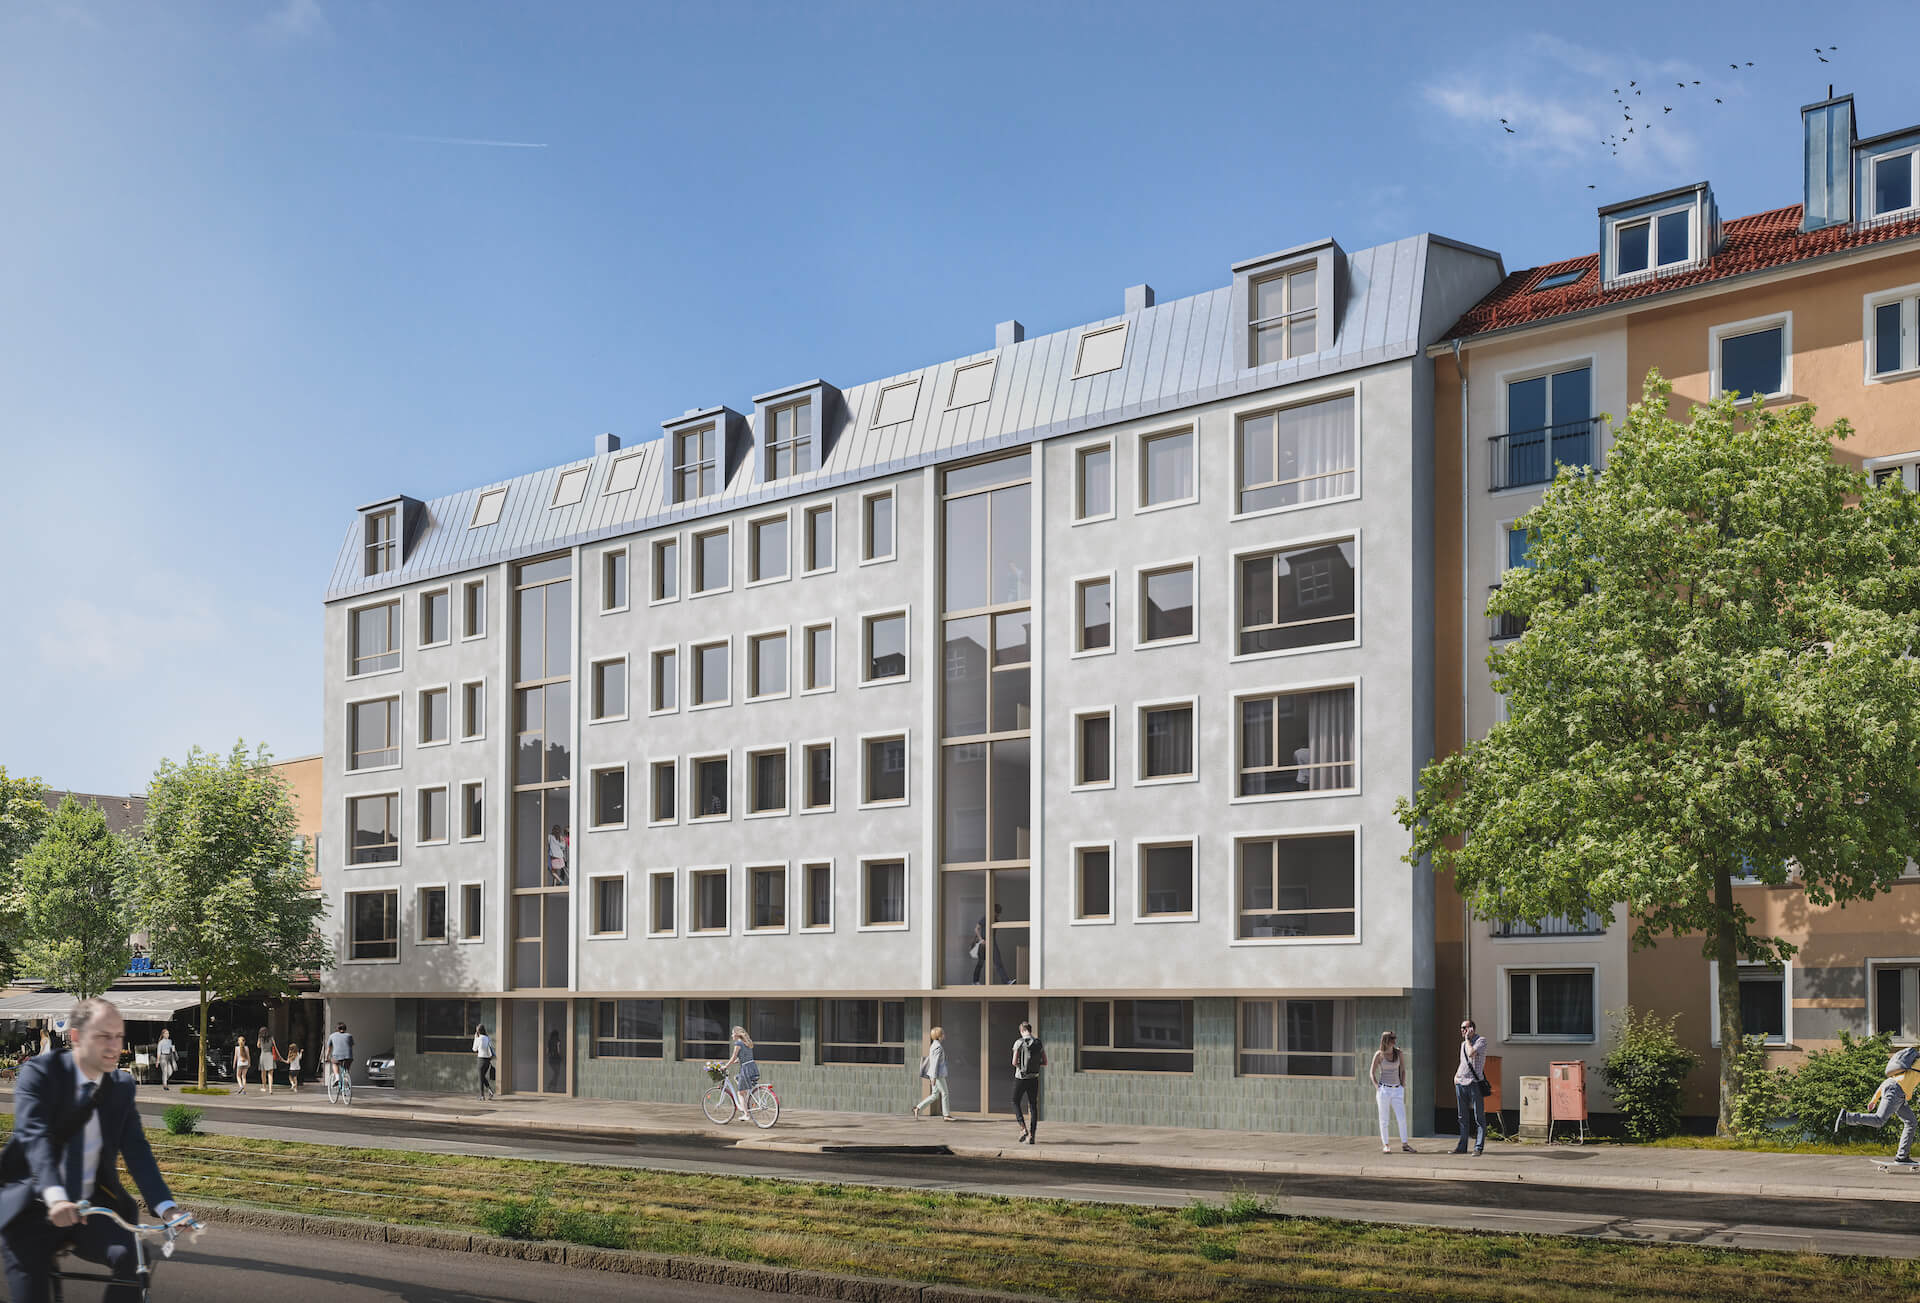 Architektur Visualisierung und 3D Rendering für Wohnbauprojekte Immobilien München